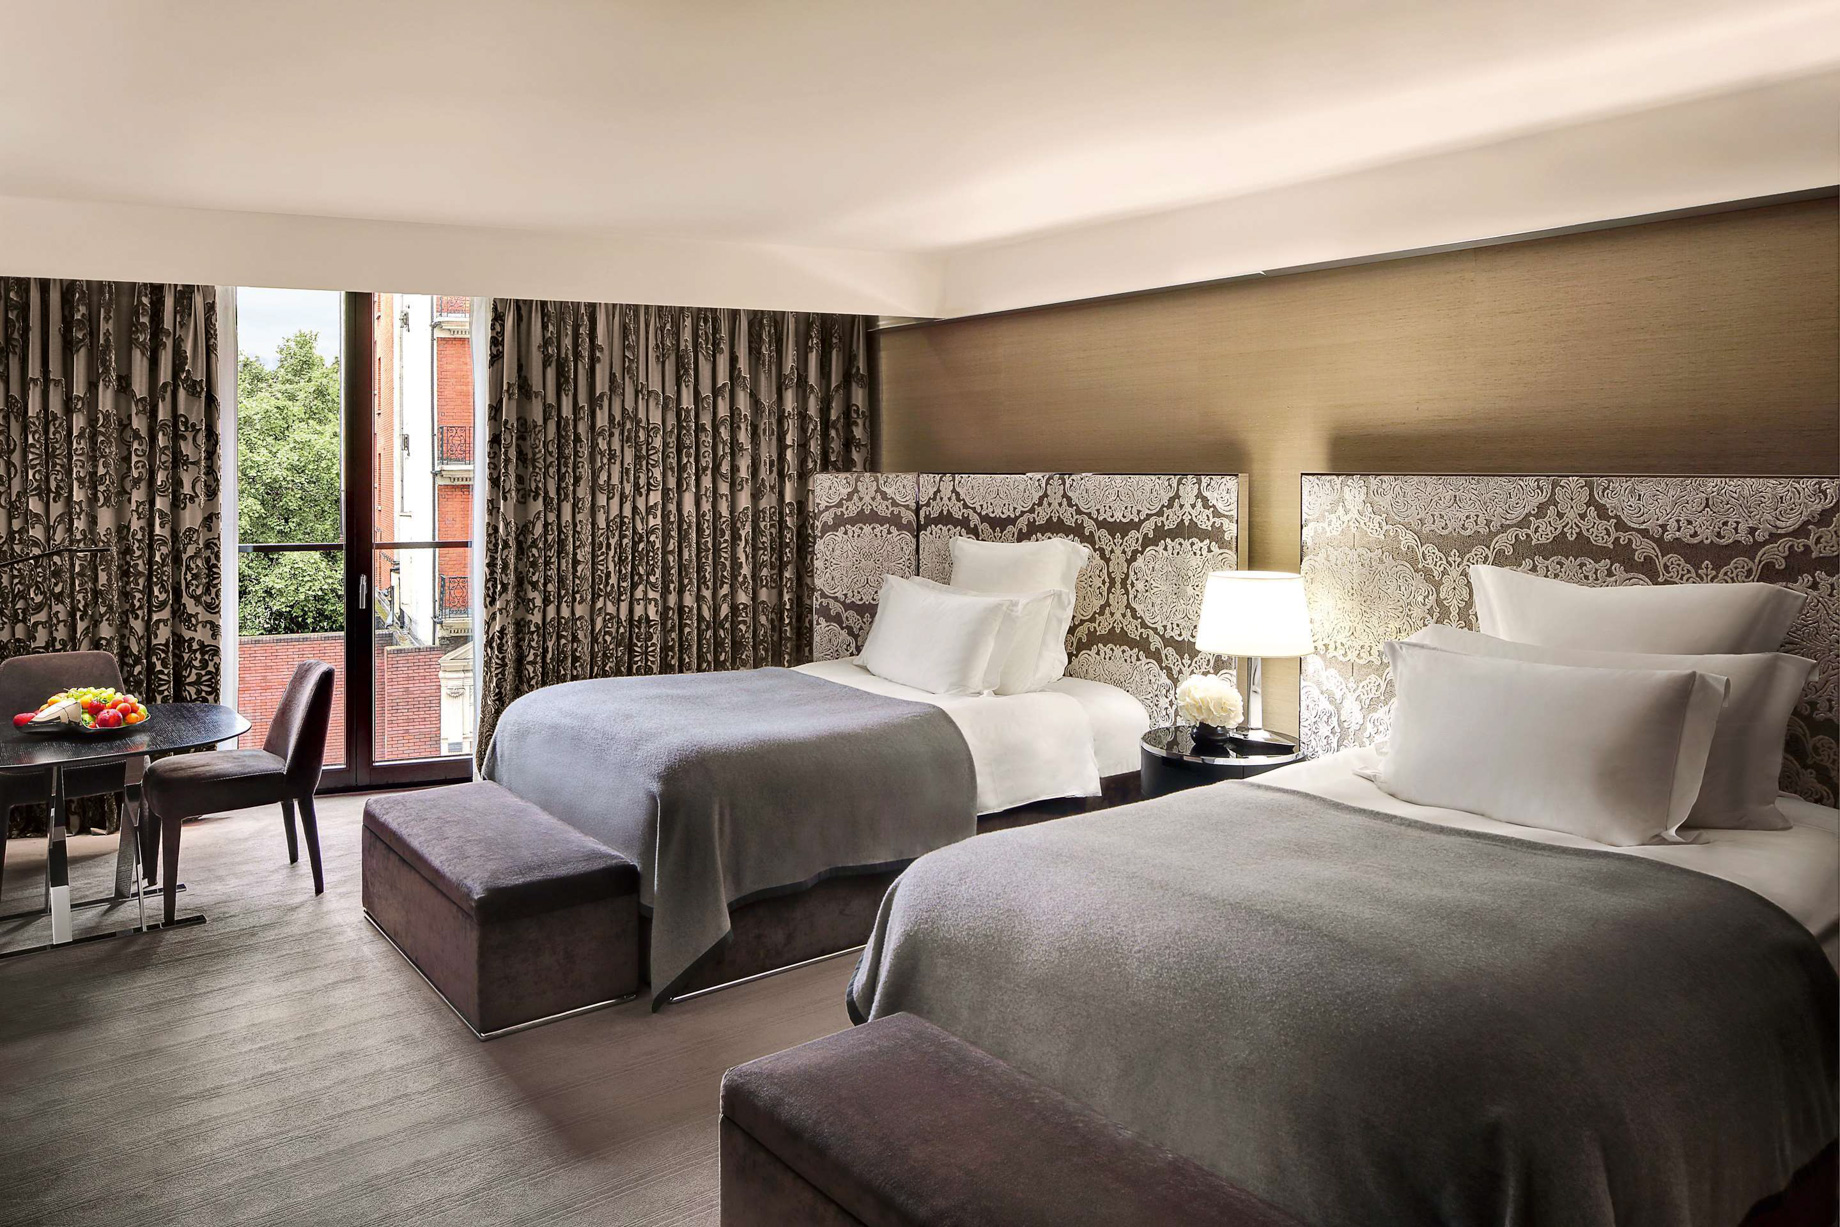 Bvlgari Hotel London – Knightsbridge, London, UK – Guest Suite Bedroom